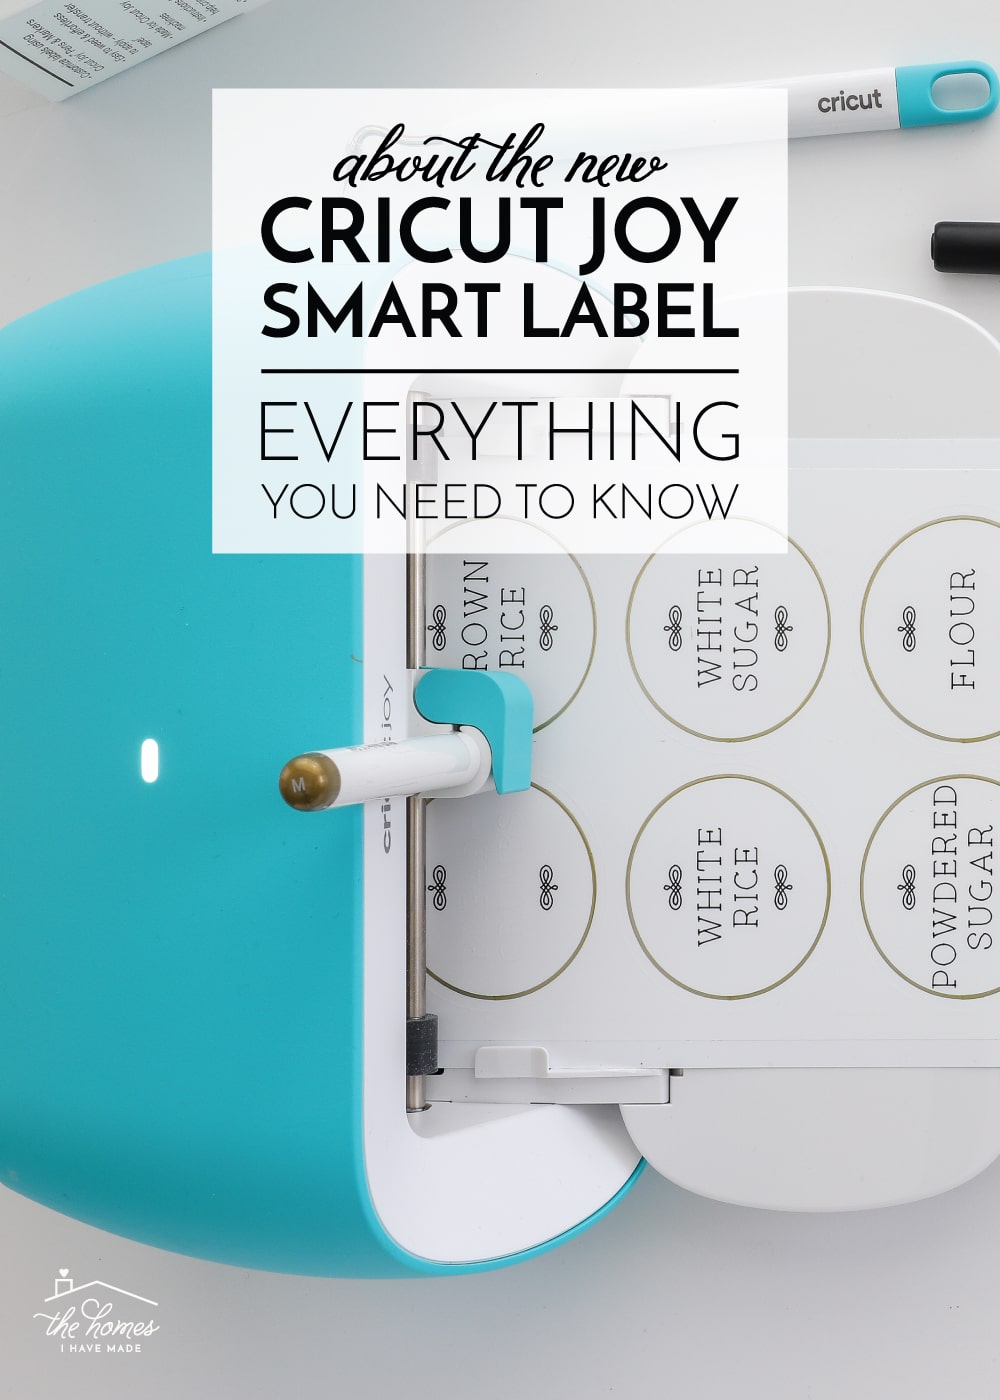 About Cricut Joy Smart Label